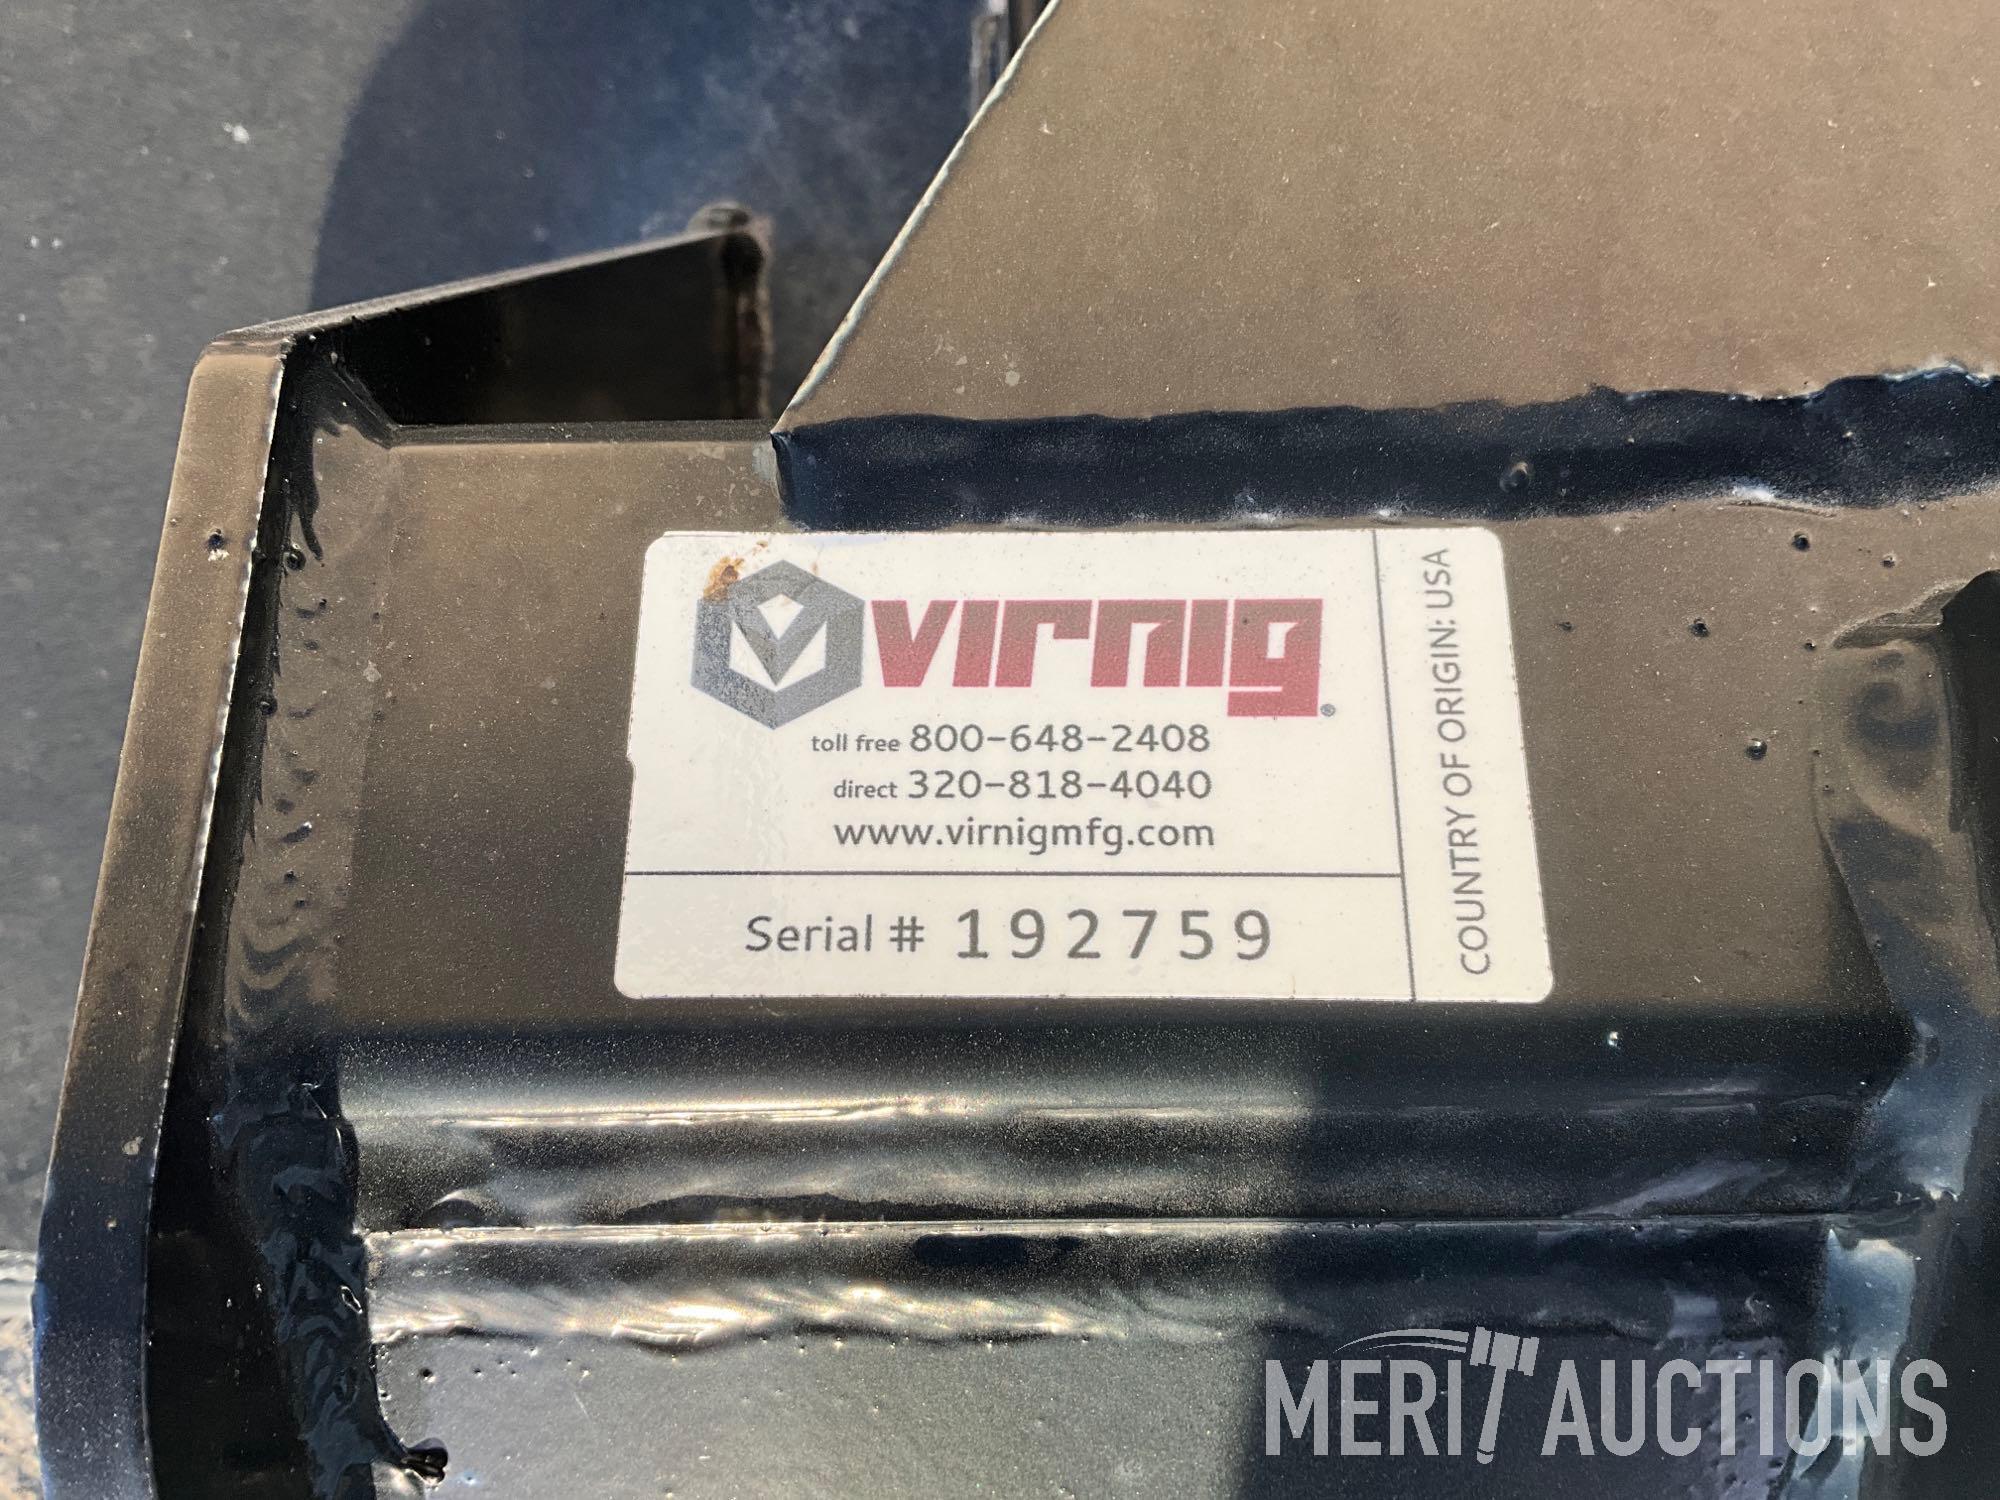 Virnig BBV72 Brush Cutter